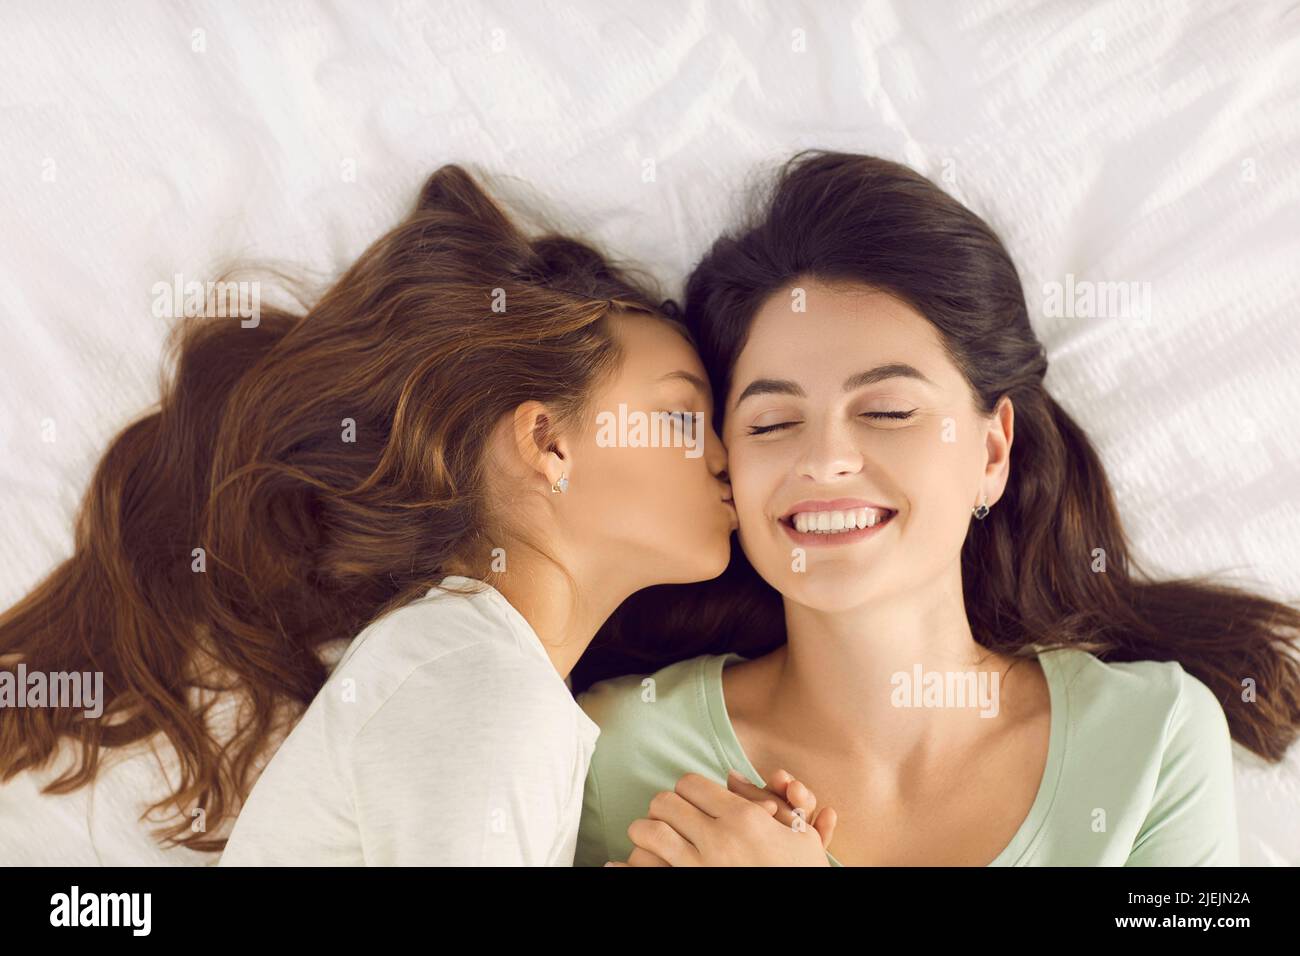 Ein glückliches, liebevolles Kind küsst ihre Mutter auf die Wange, als sie sie am Morgen aufweckt Stockfoto